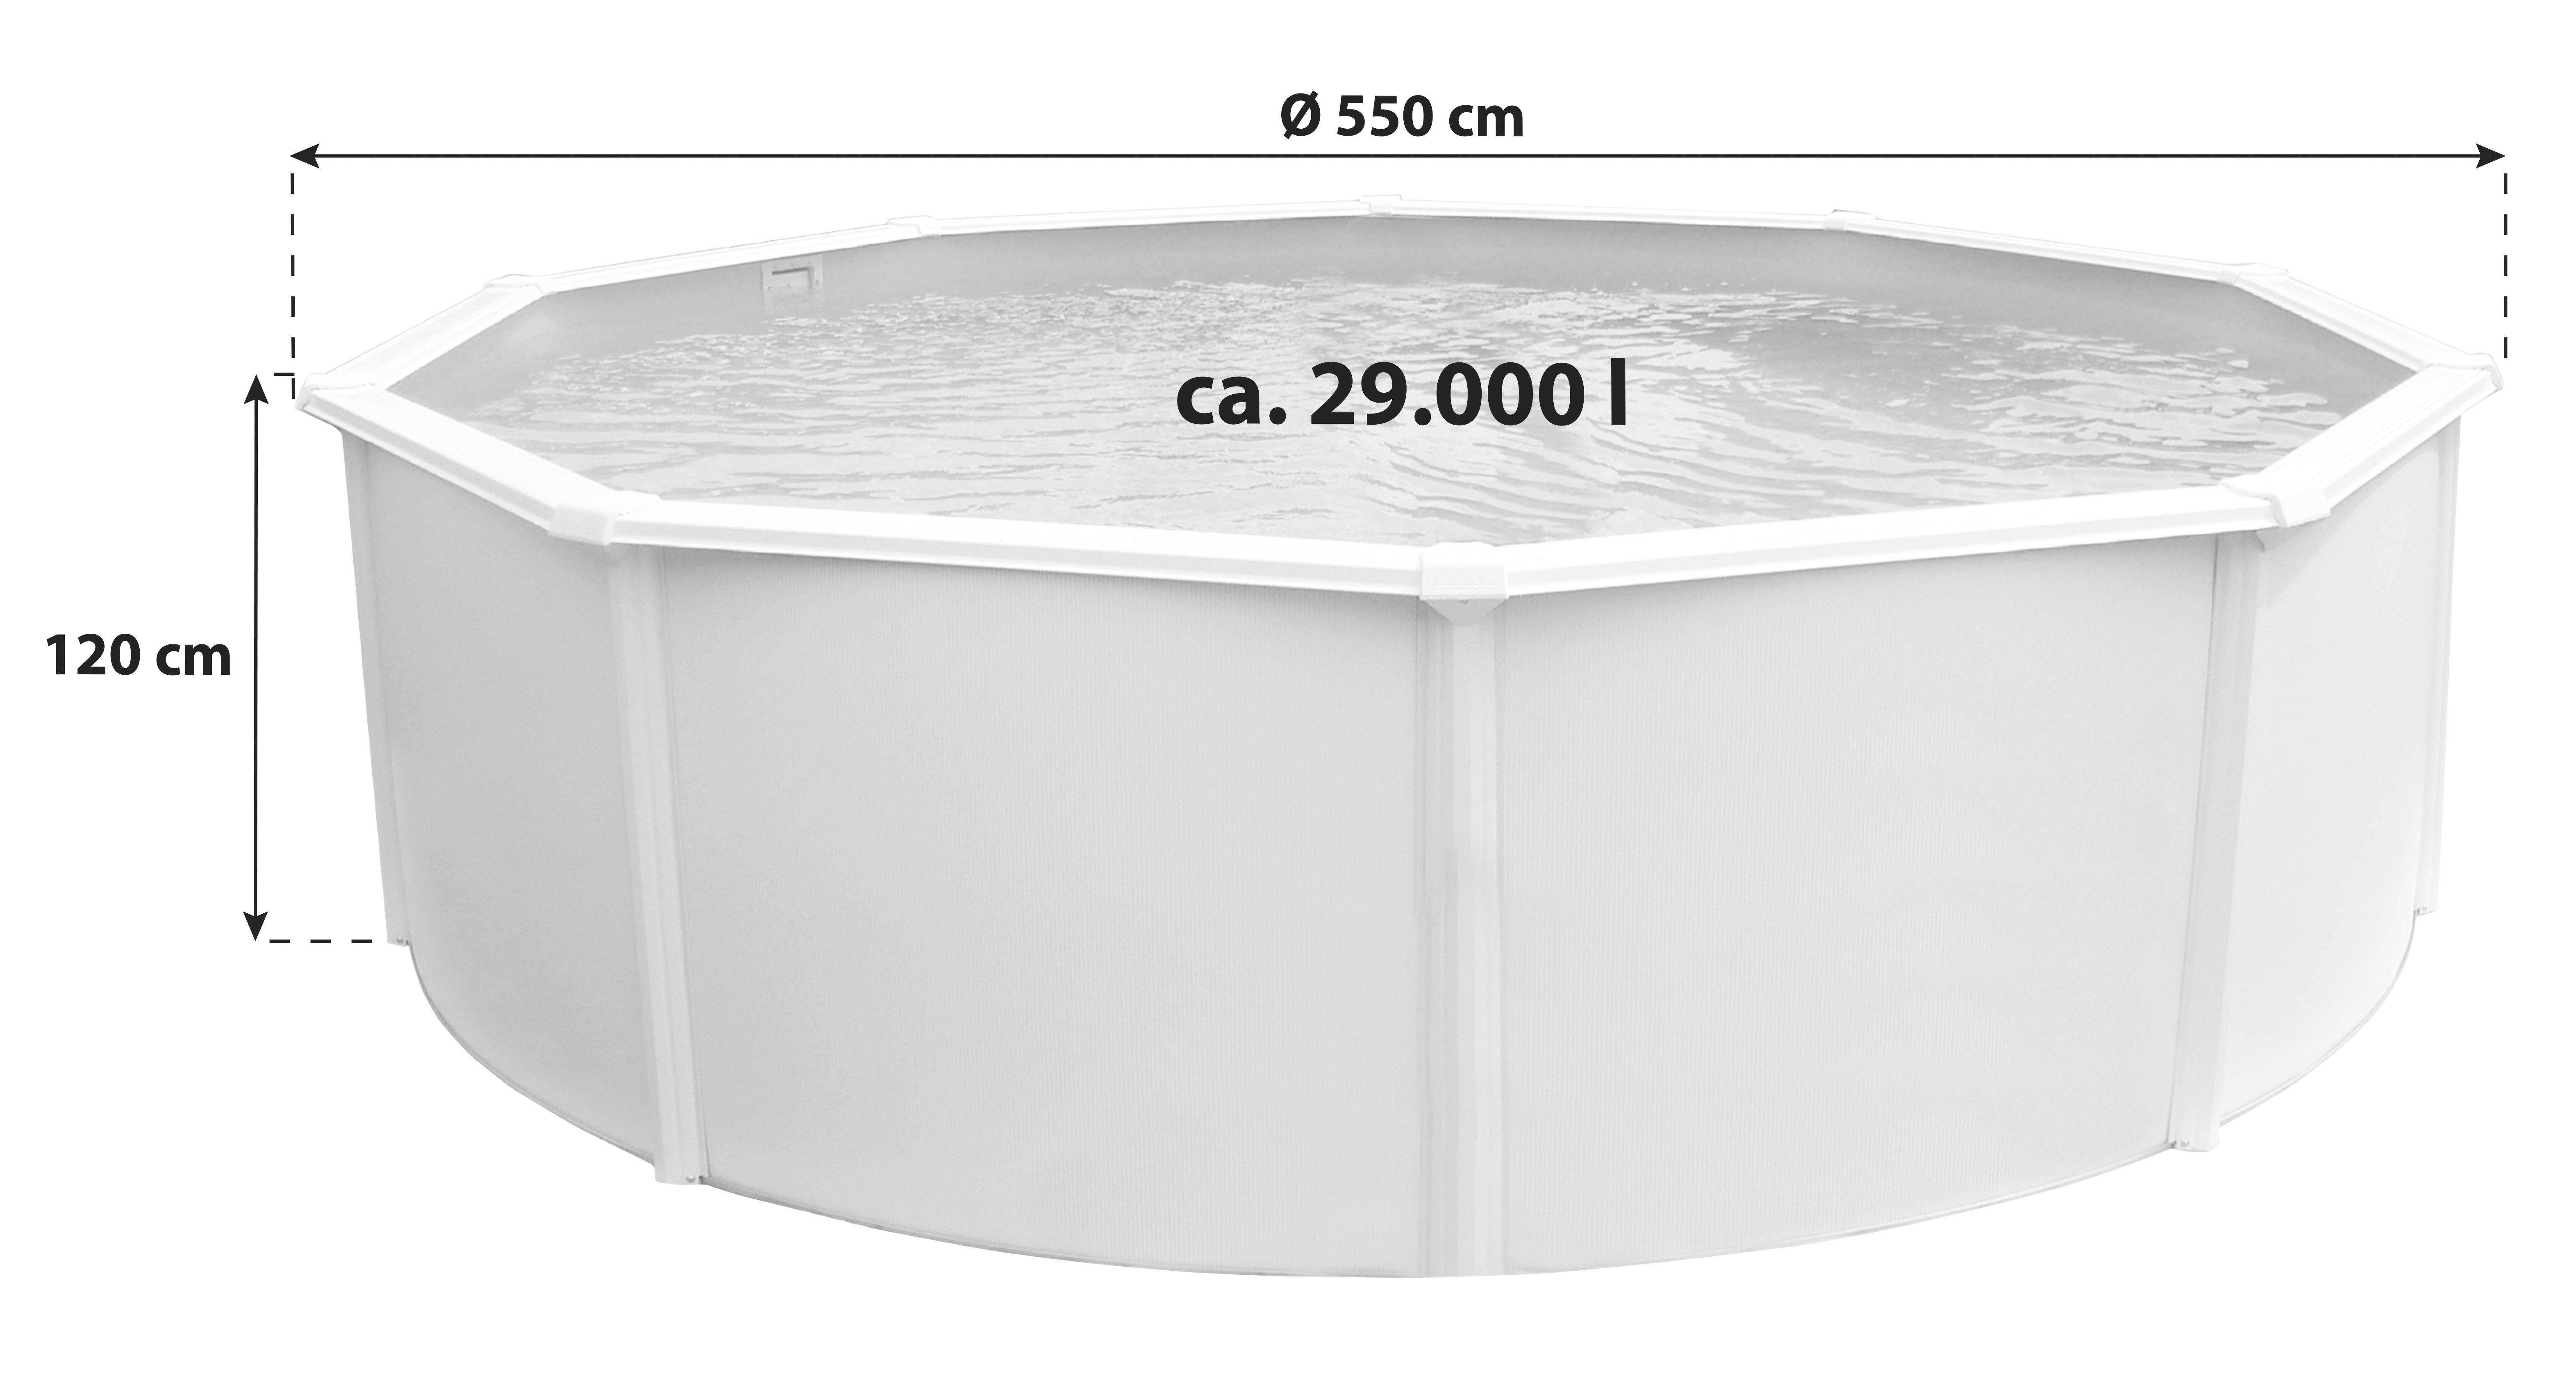 Stahlwandpool Rund Set Steely De Luxe mit Pumpe Ø 550 cm - Weiß, MODERN, Metall (550/120cm)